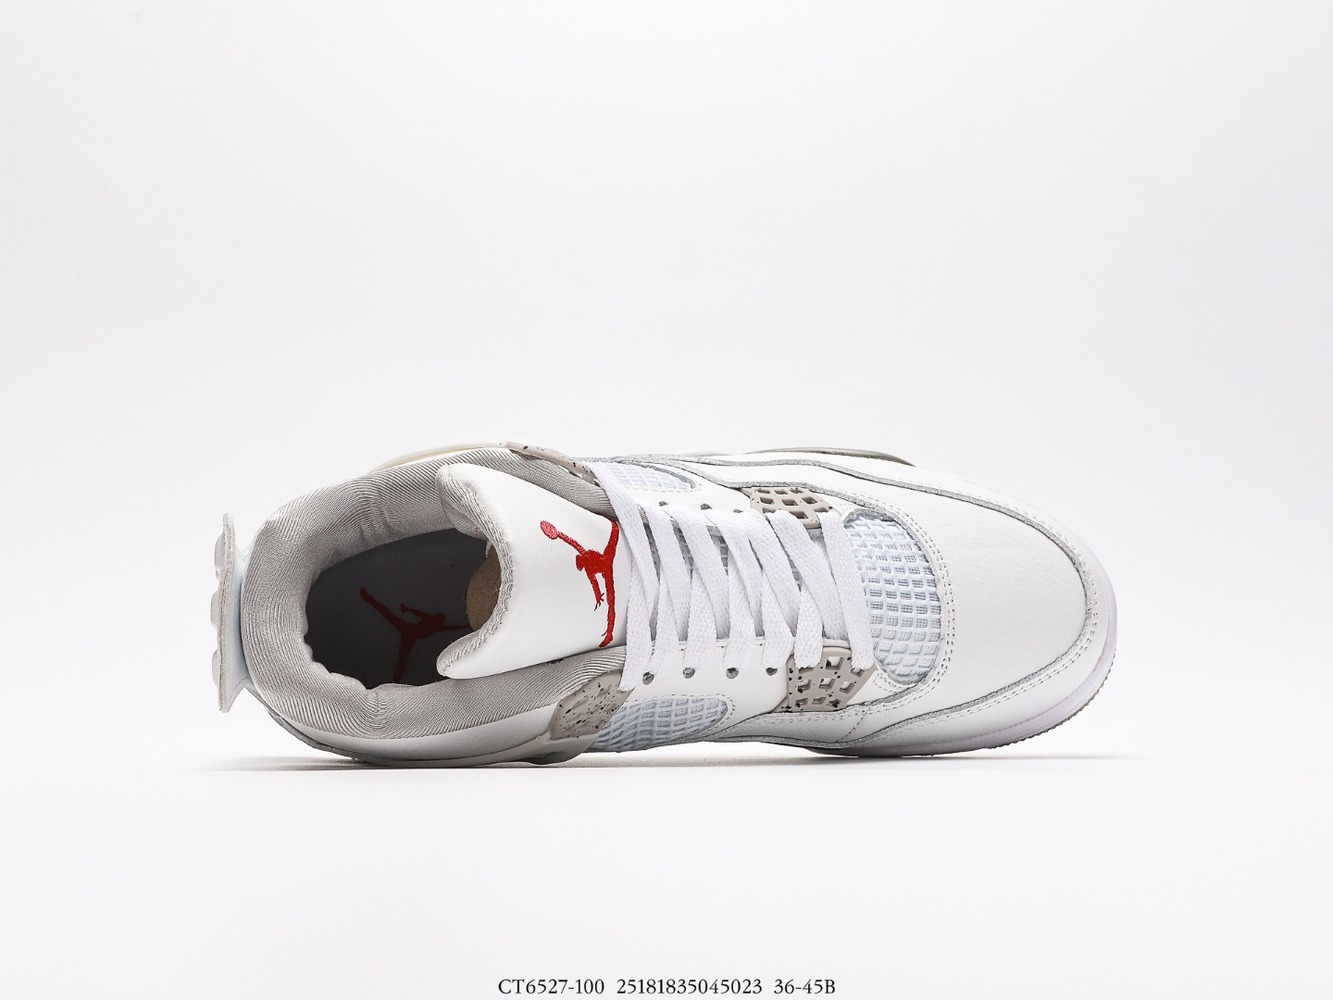 Air Jordan 4 Retro
White Oreo